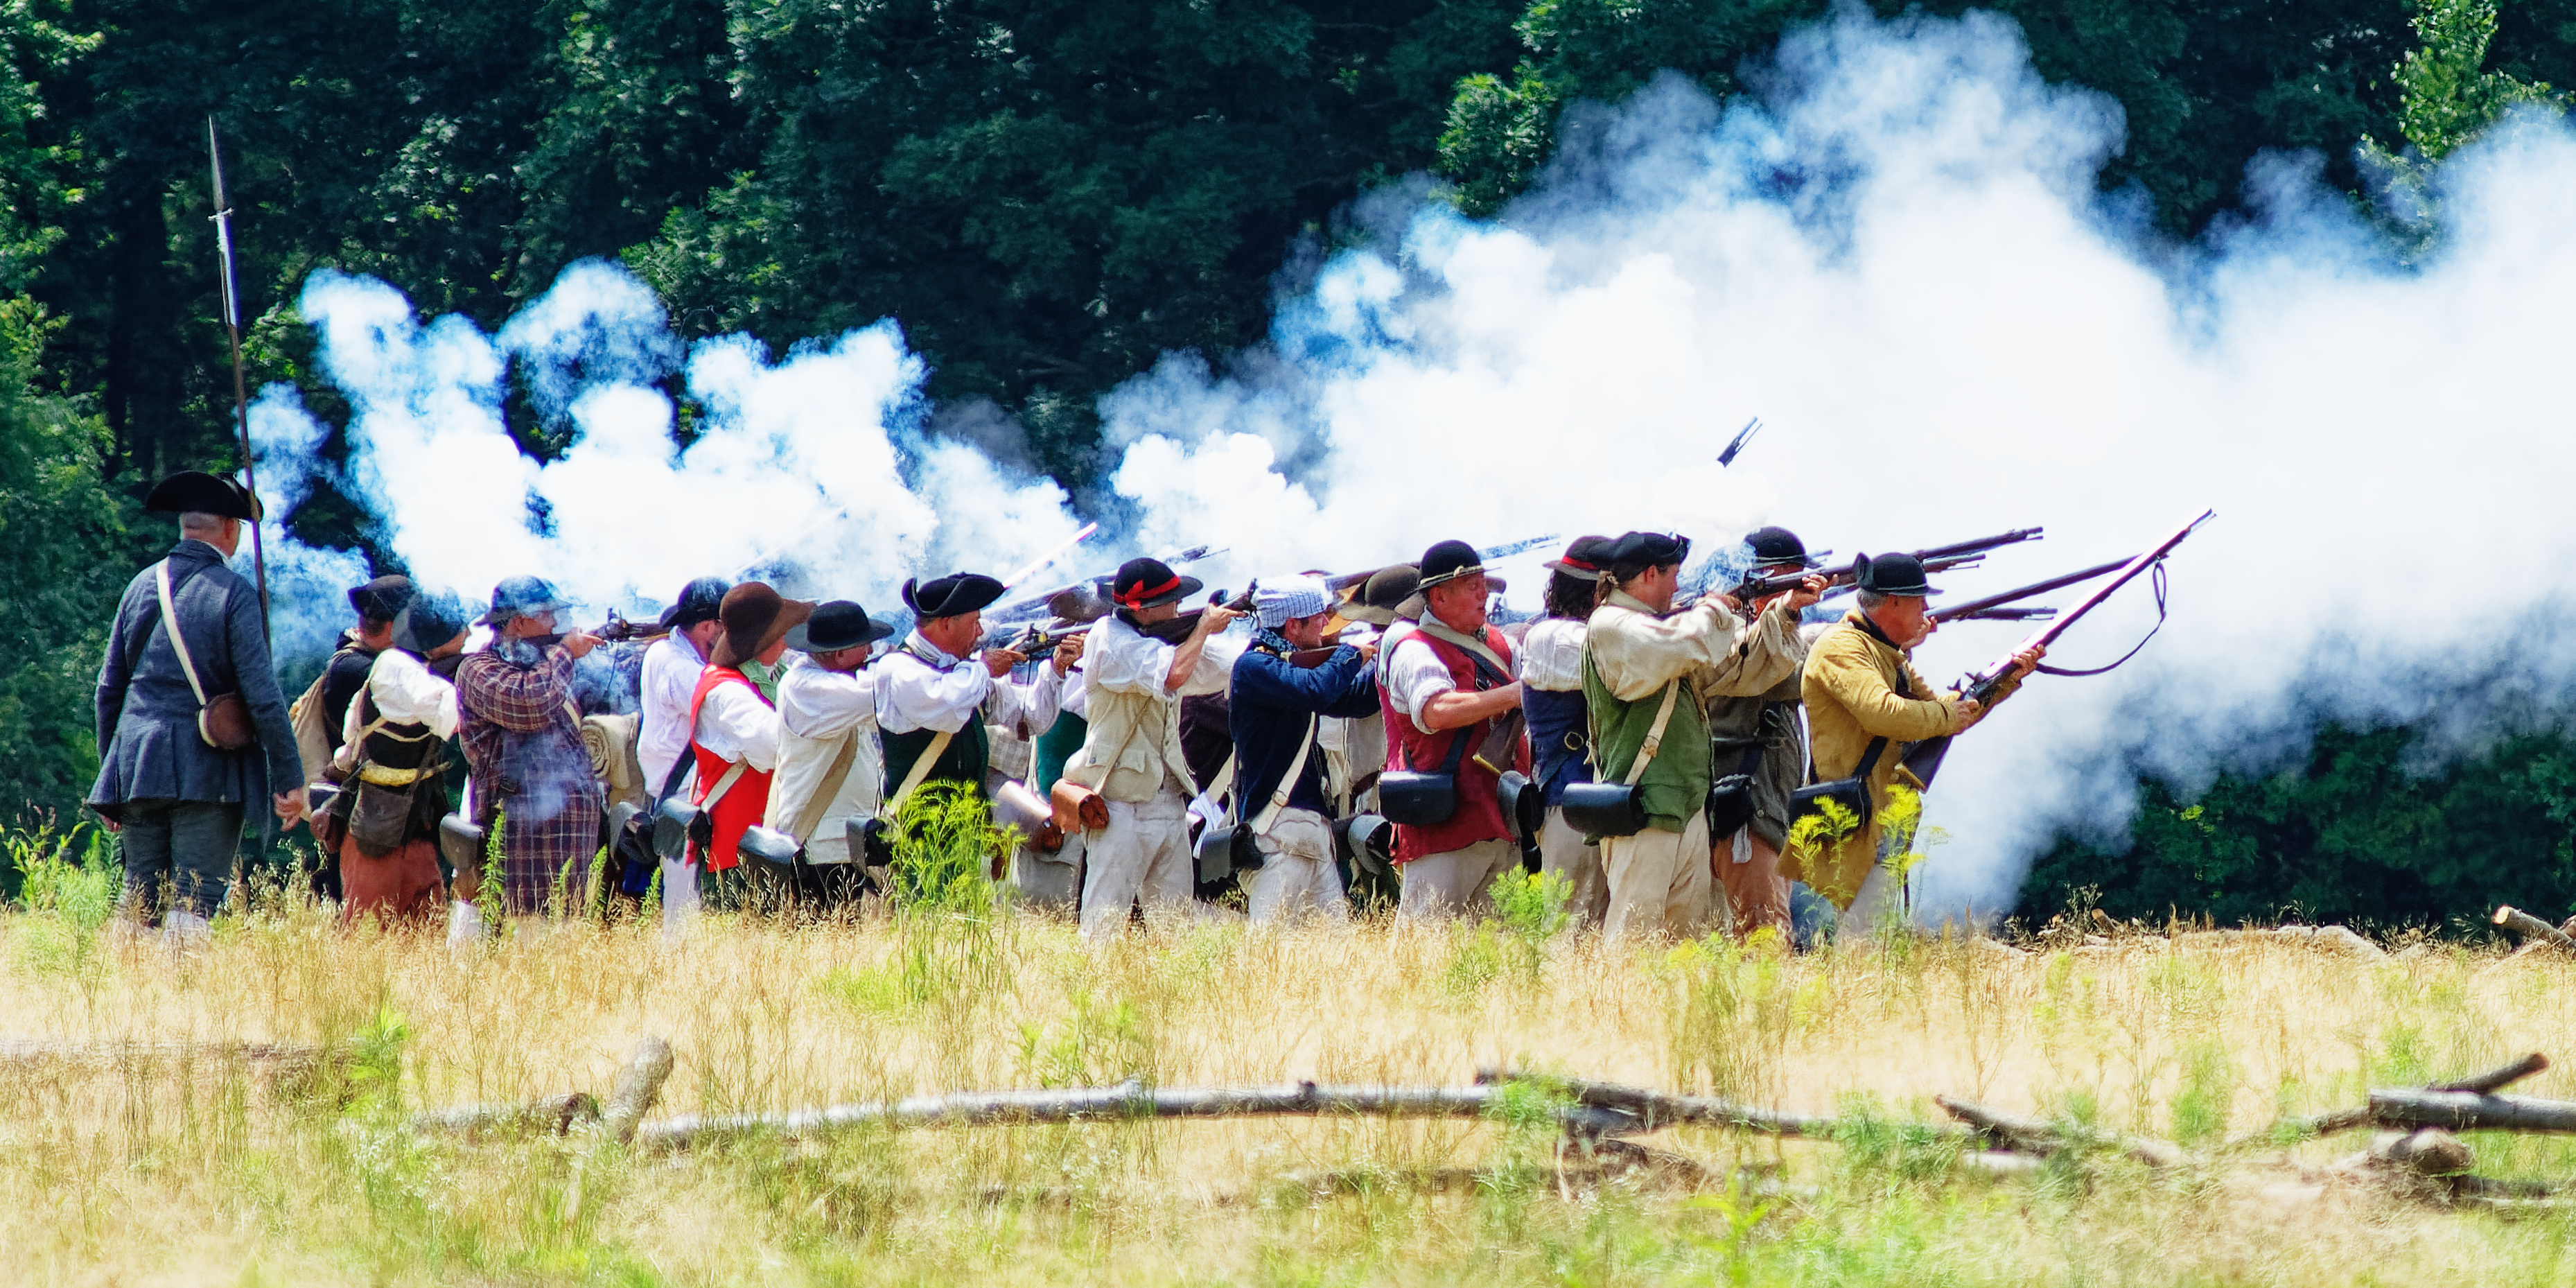 Battle of Bunker Hill Reenactment